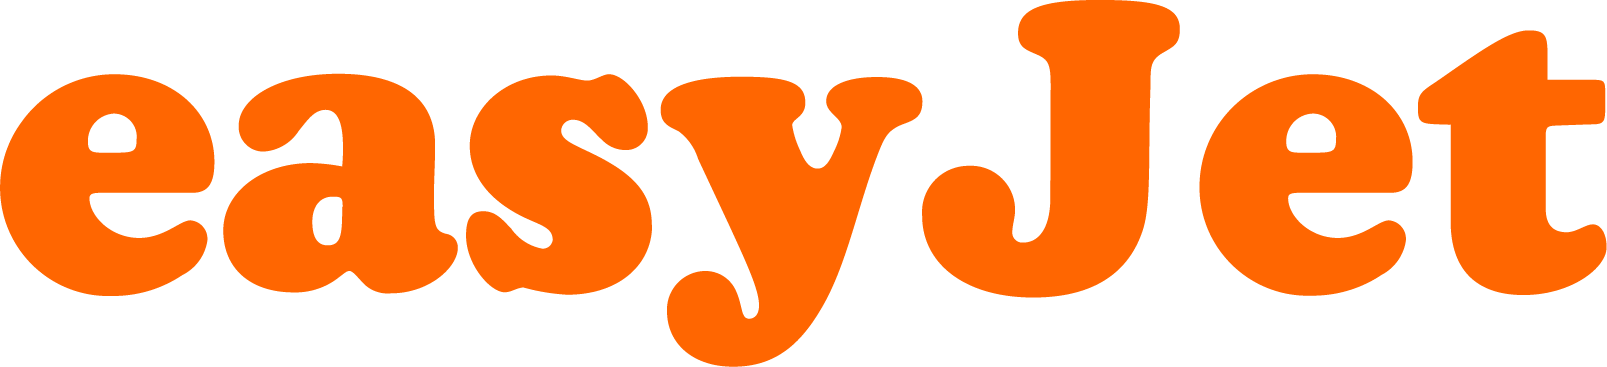 EasyJet Logo png